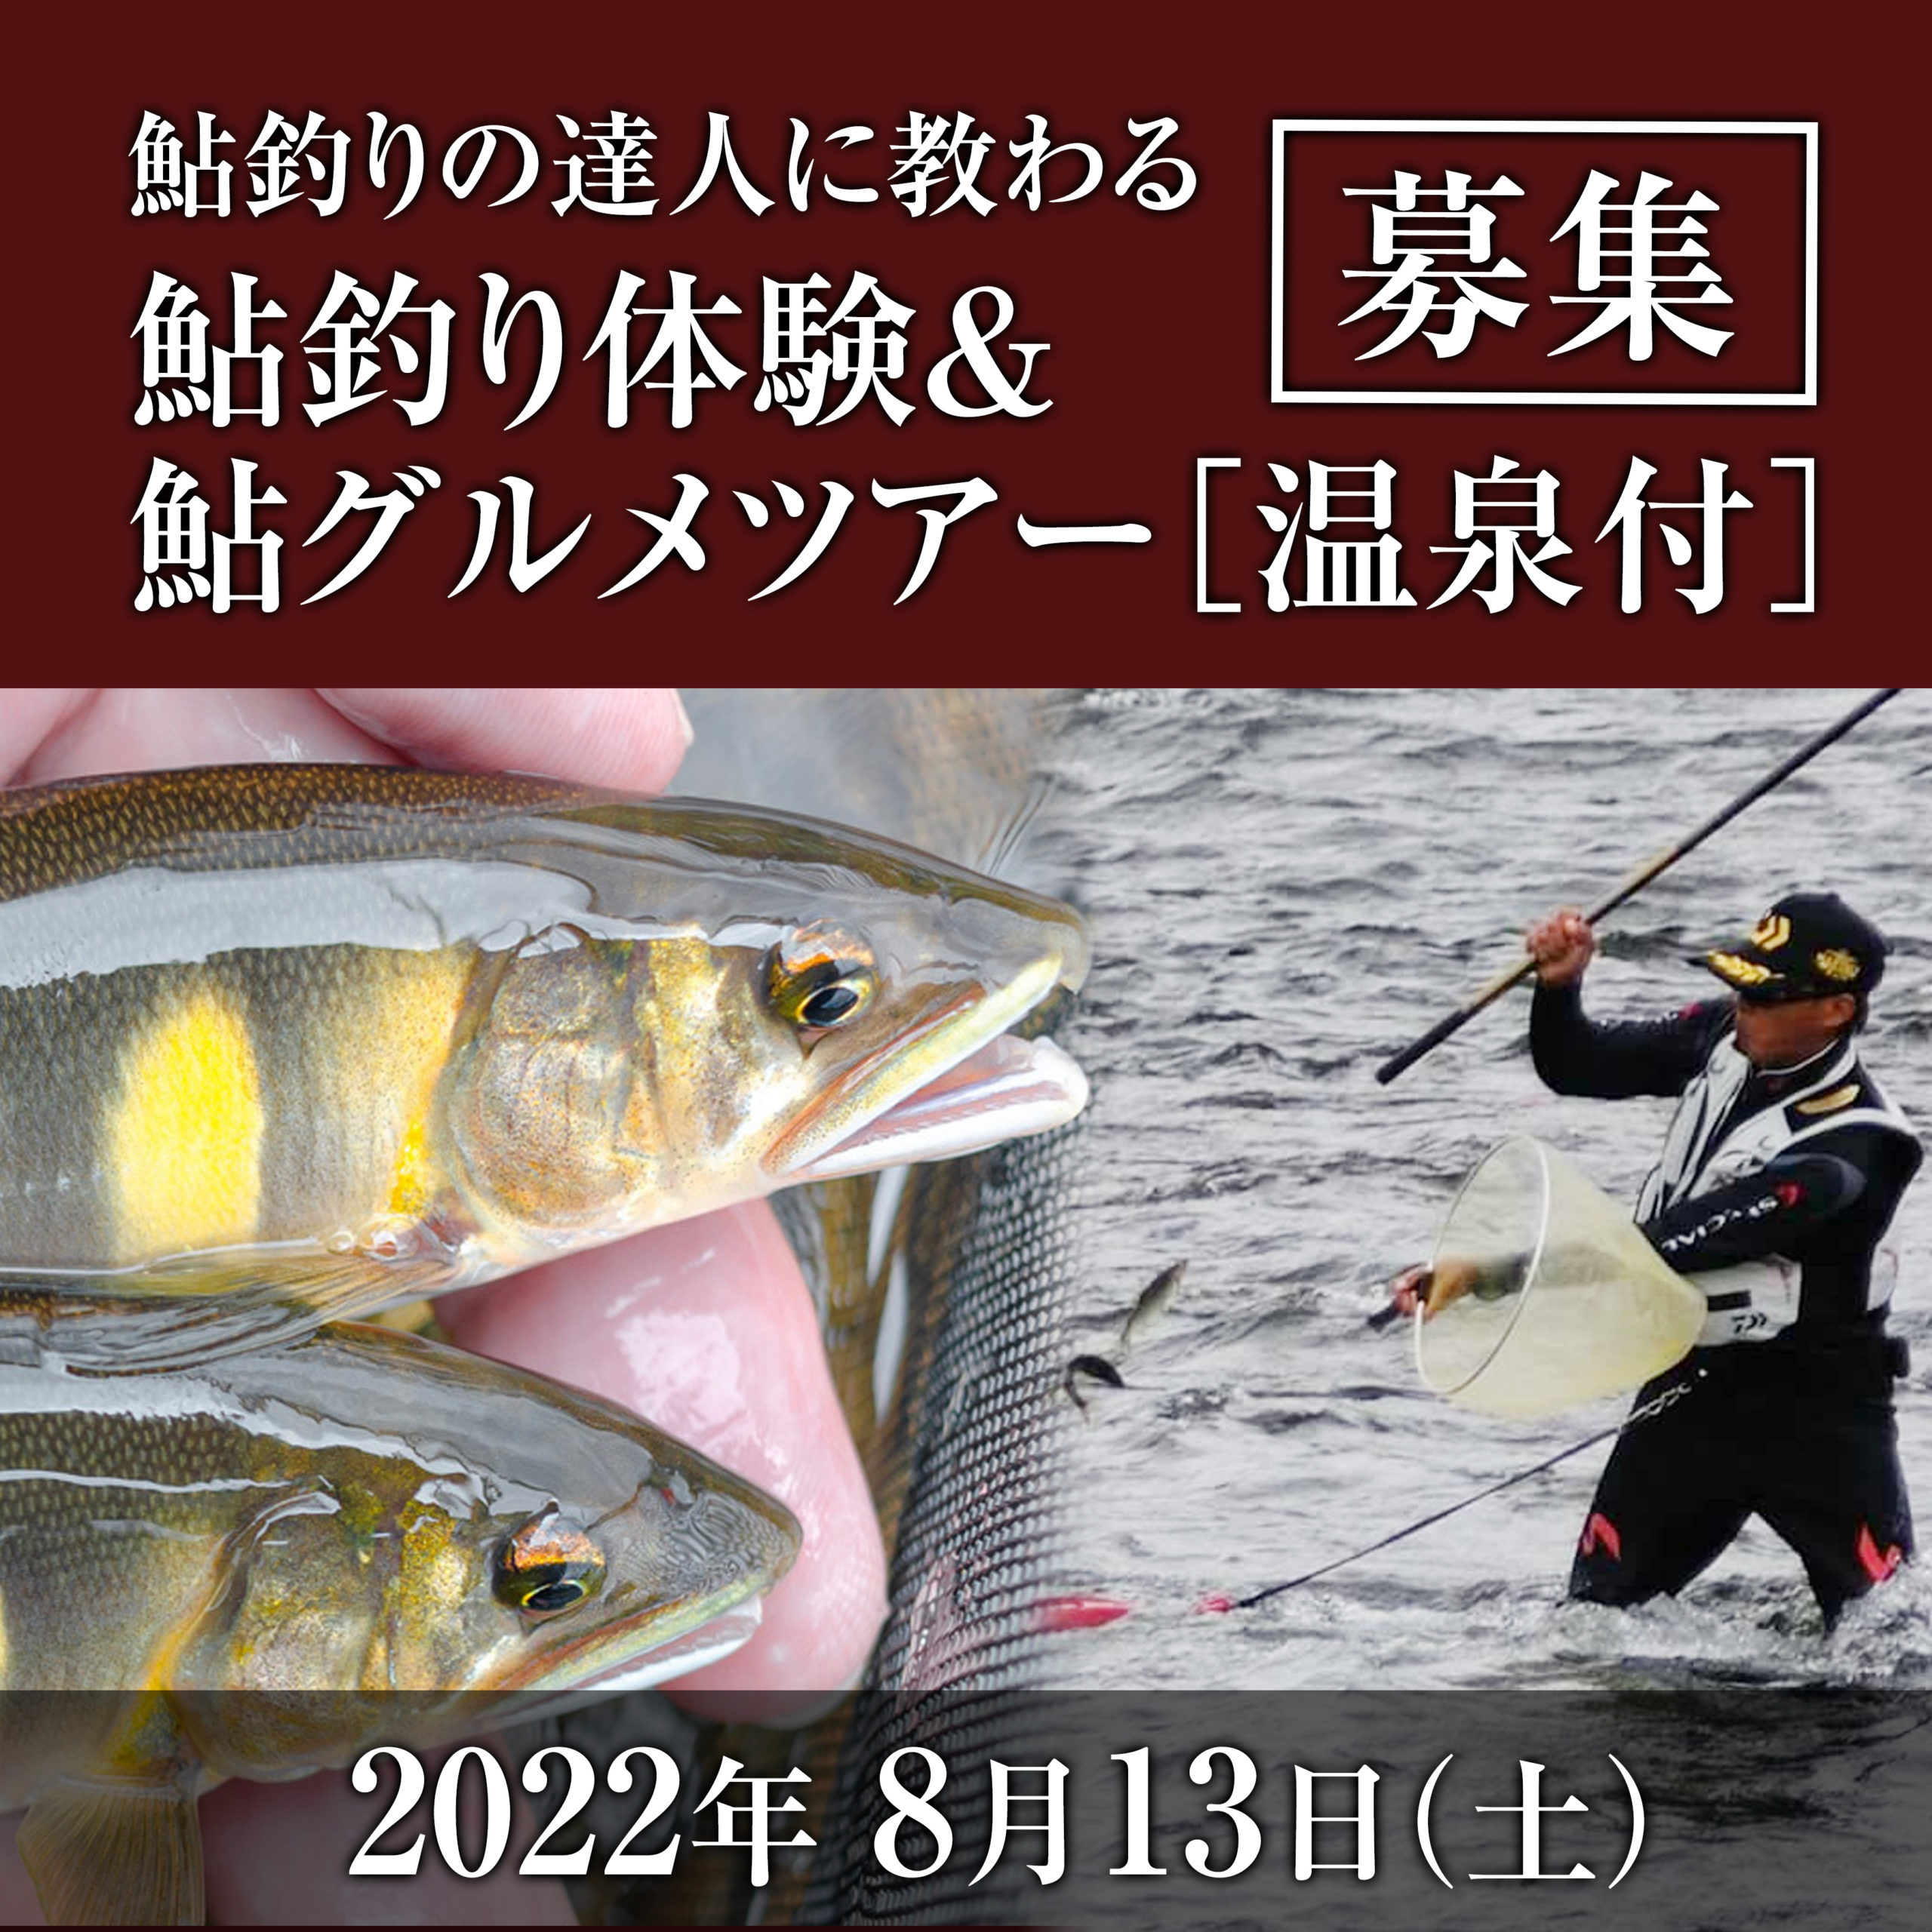 鮎釣り広告